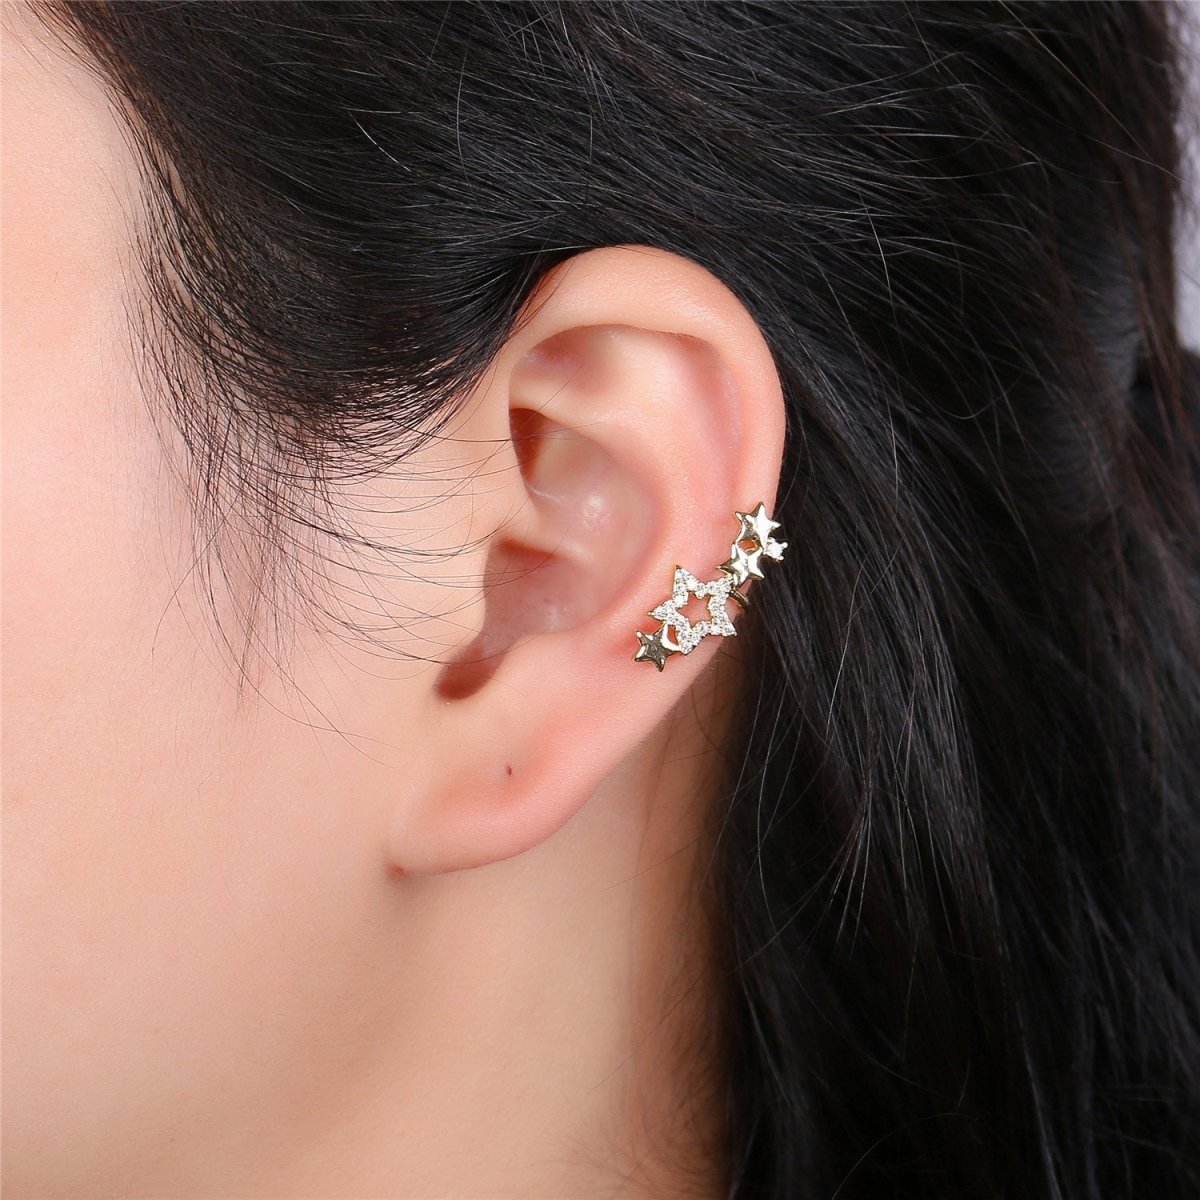 Star Ear Cuff No Piercing • Gold Filled ear cuff • conch cuff • fake helix piercing • Star earring crawler • cartilage cuff K-155 - DLUXCA